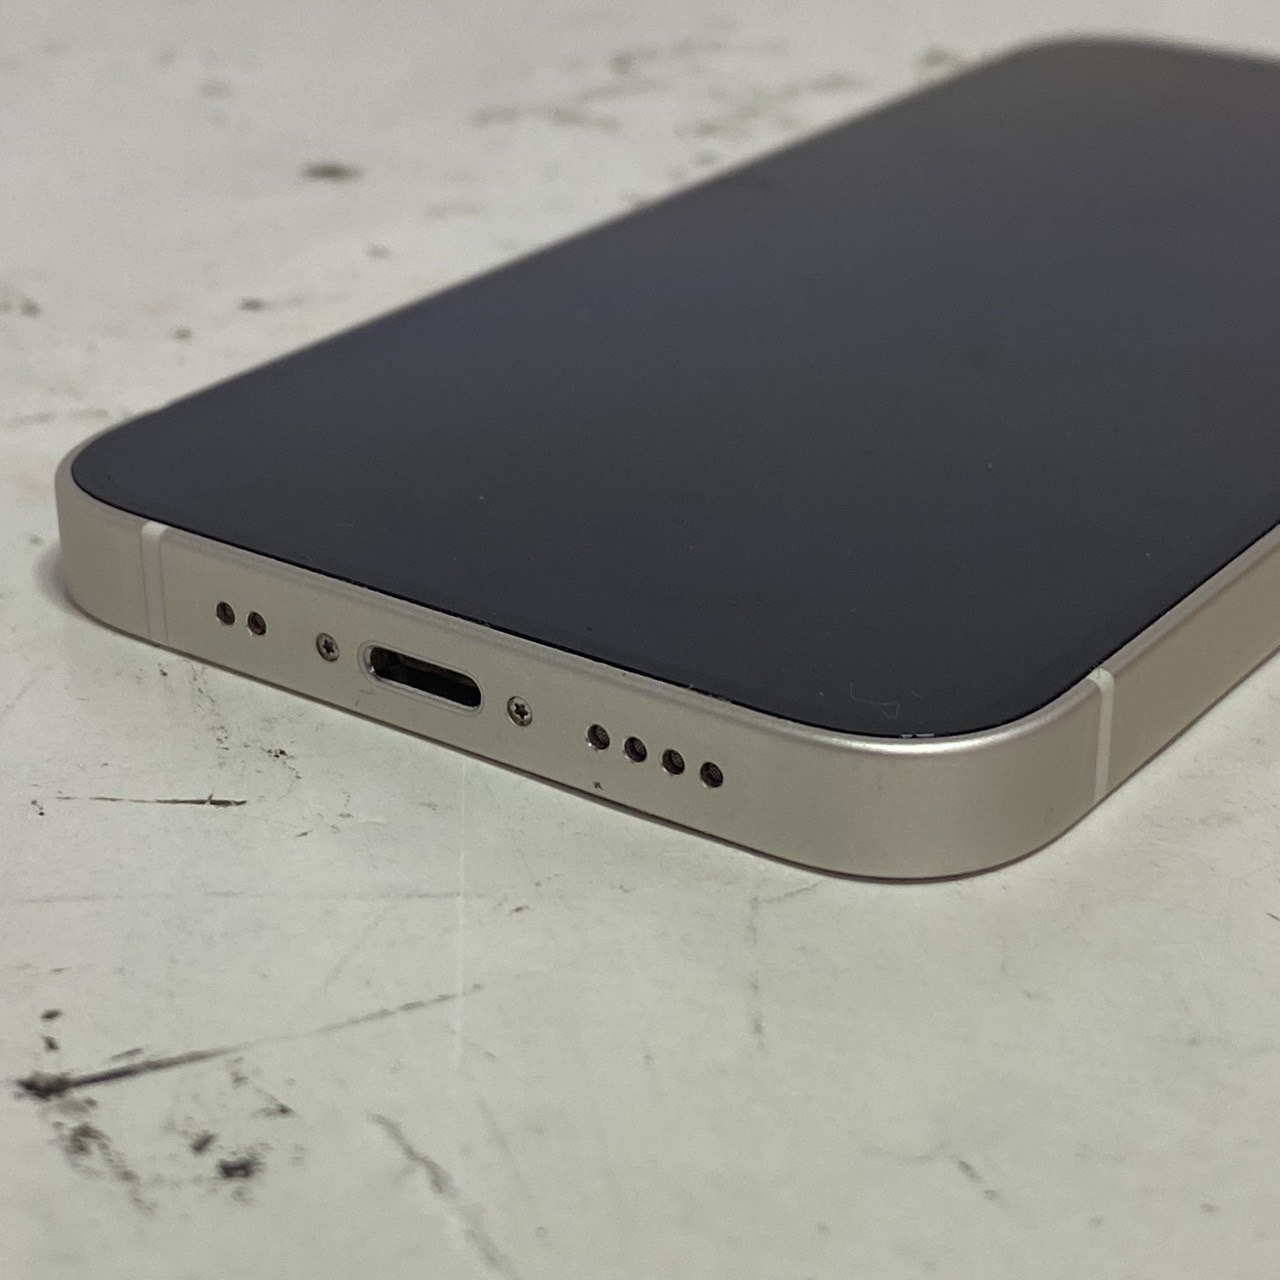 APPLE(アップル) iPhone 12 mini 128GB SIMフリー [ホワイト]の激安